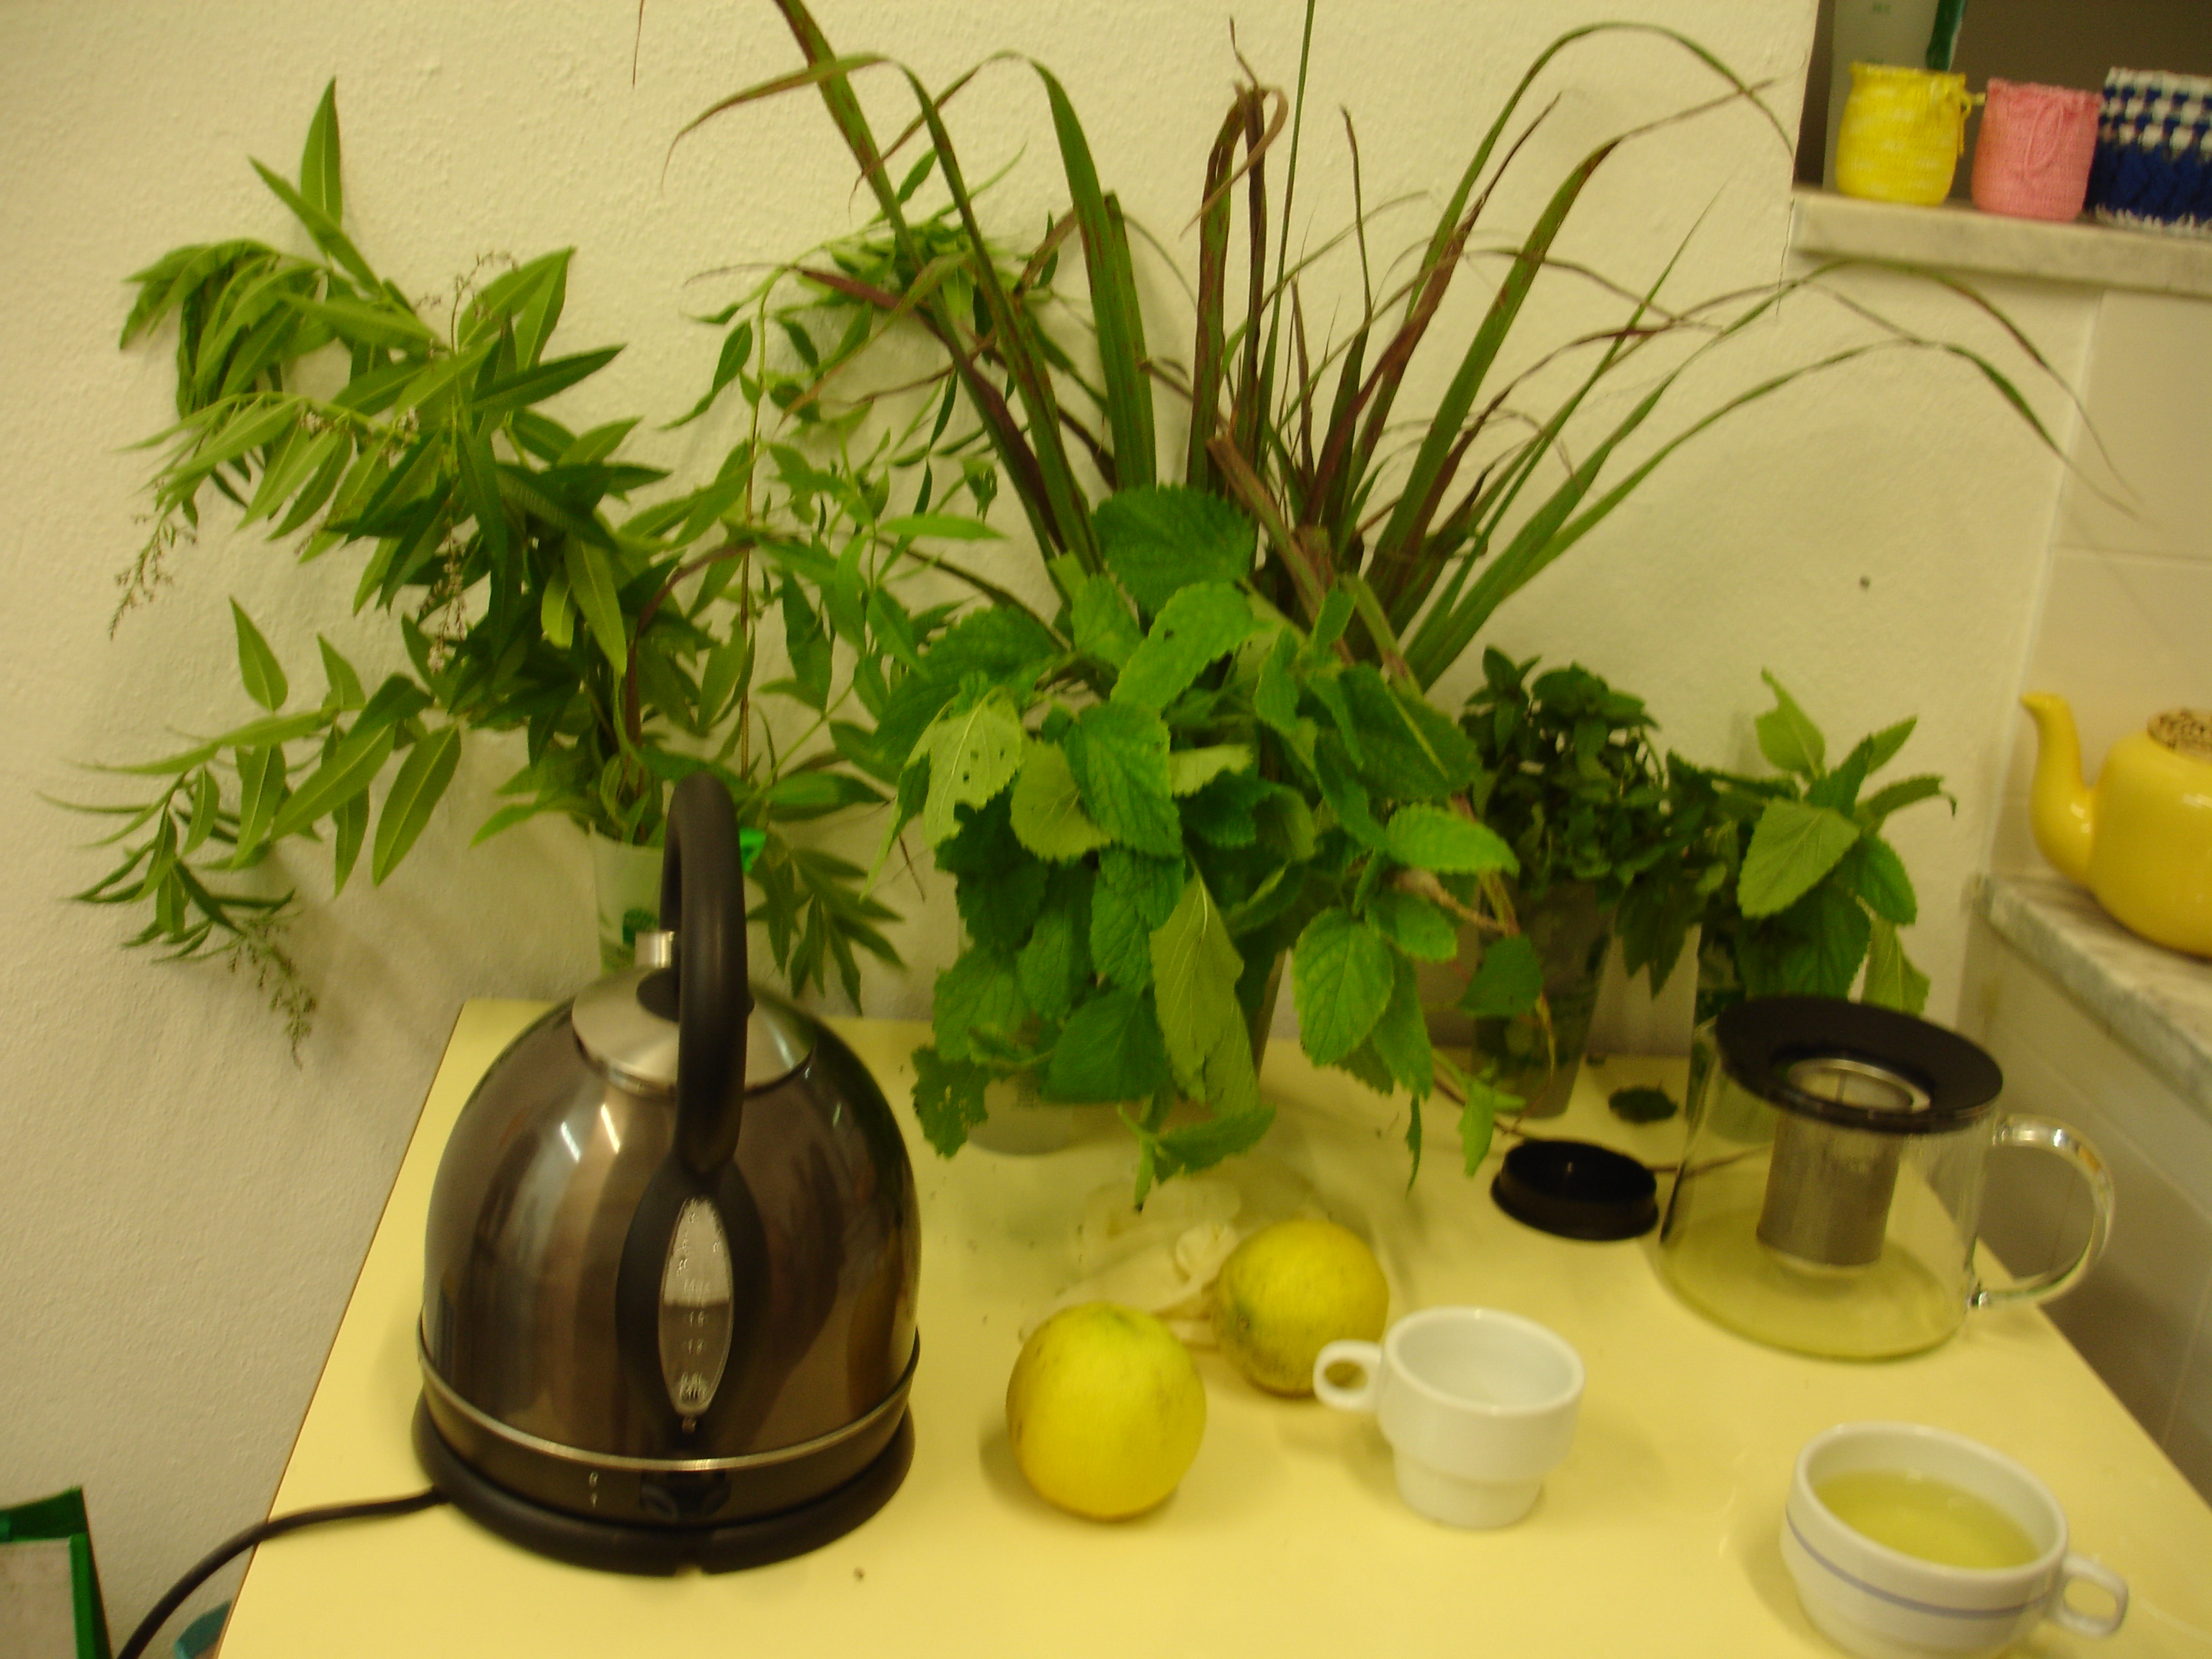 Beber infusões de plantas aromáticas da horta
Diversidade de plantas e frutos utilizados nos chás.
Implementamos  a cofeção de infusões no bufete da Escola.